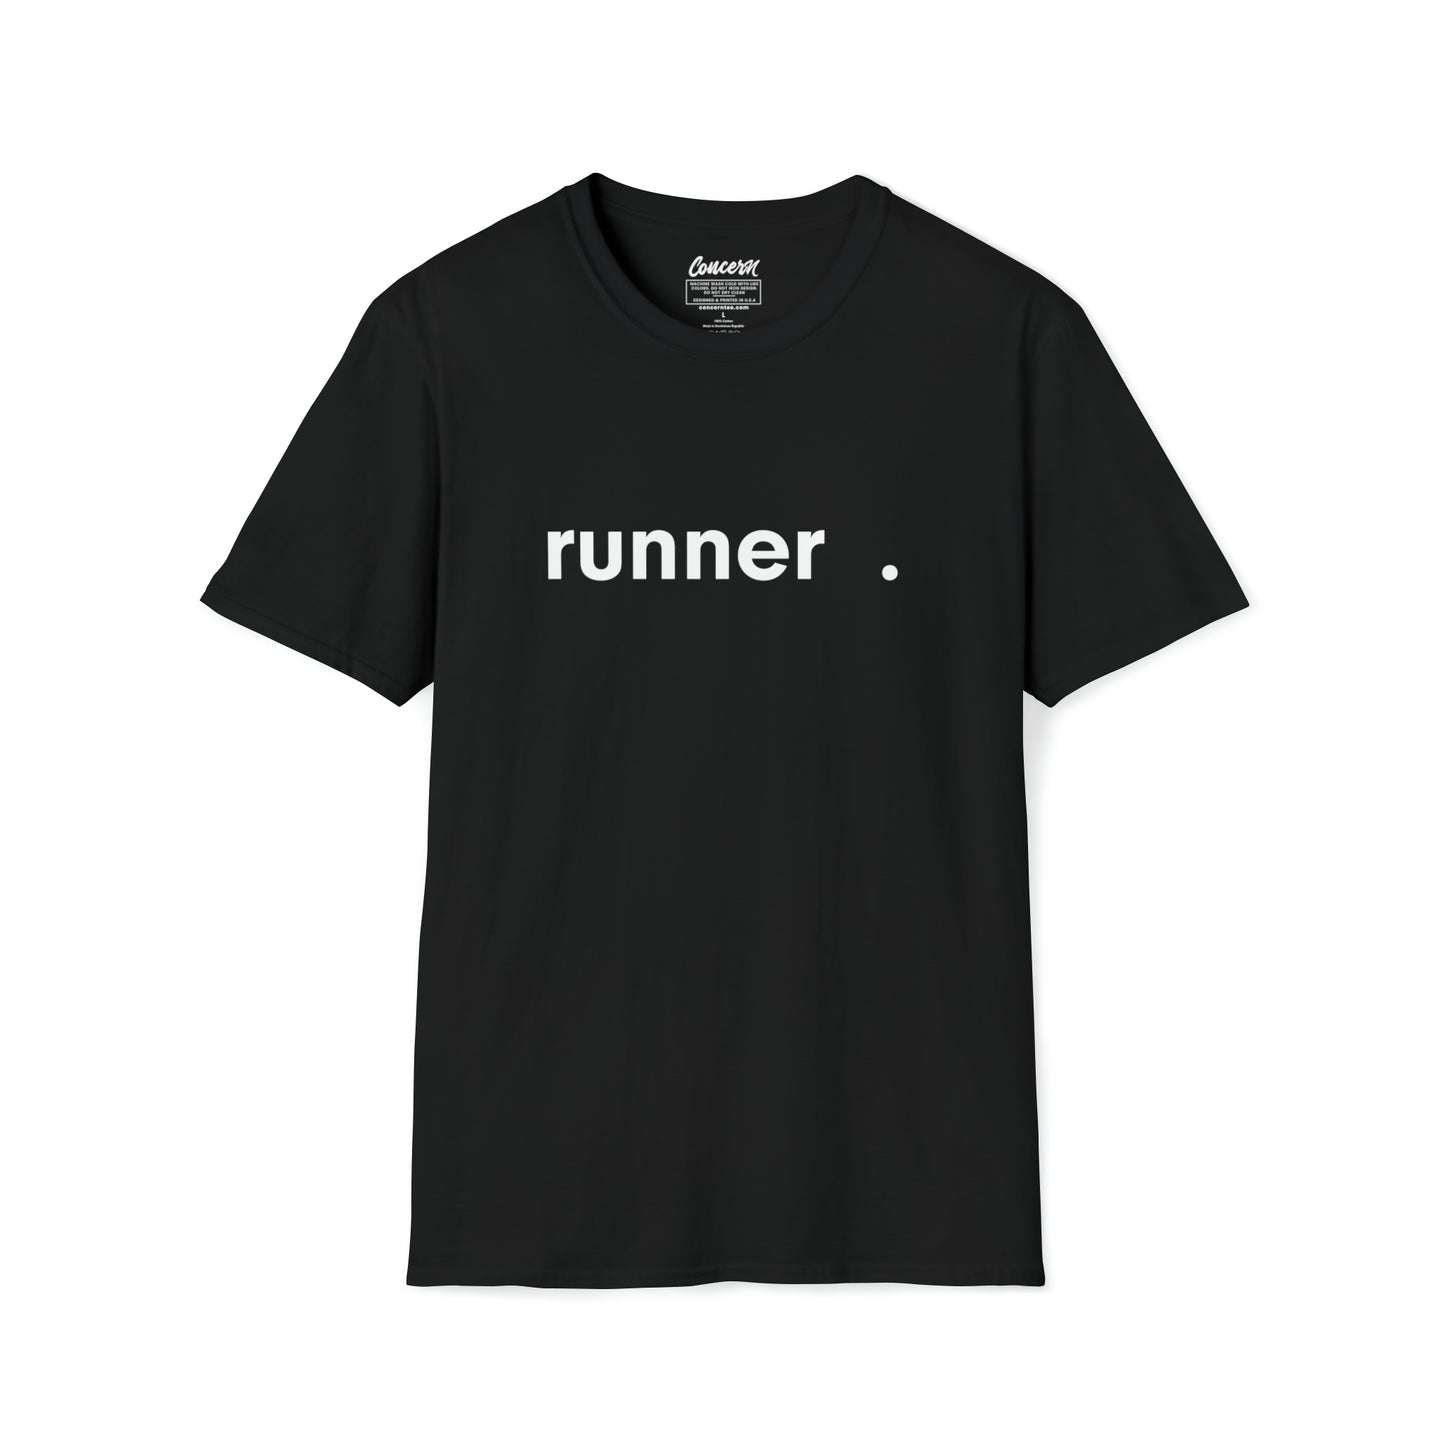 The Original Runner T-Shirt